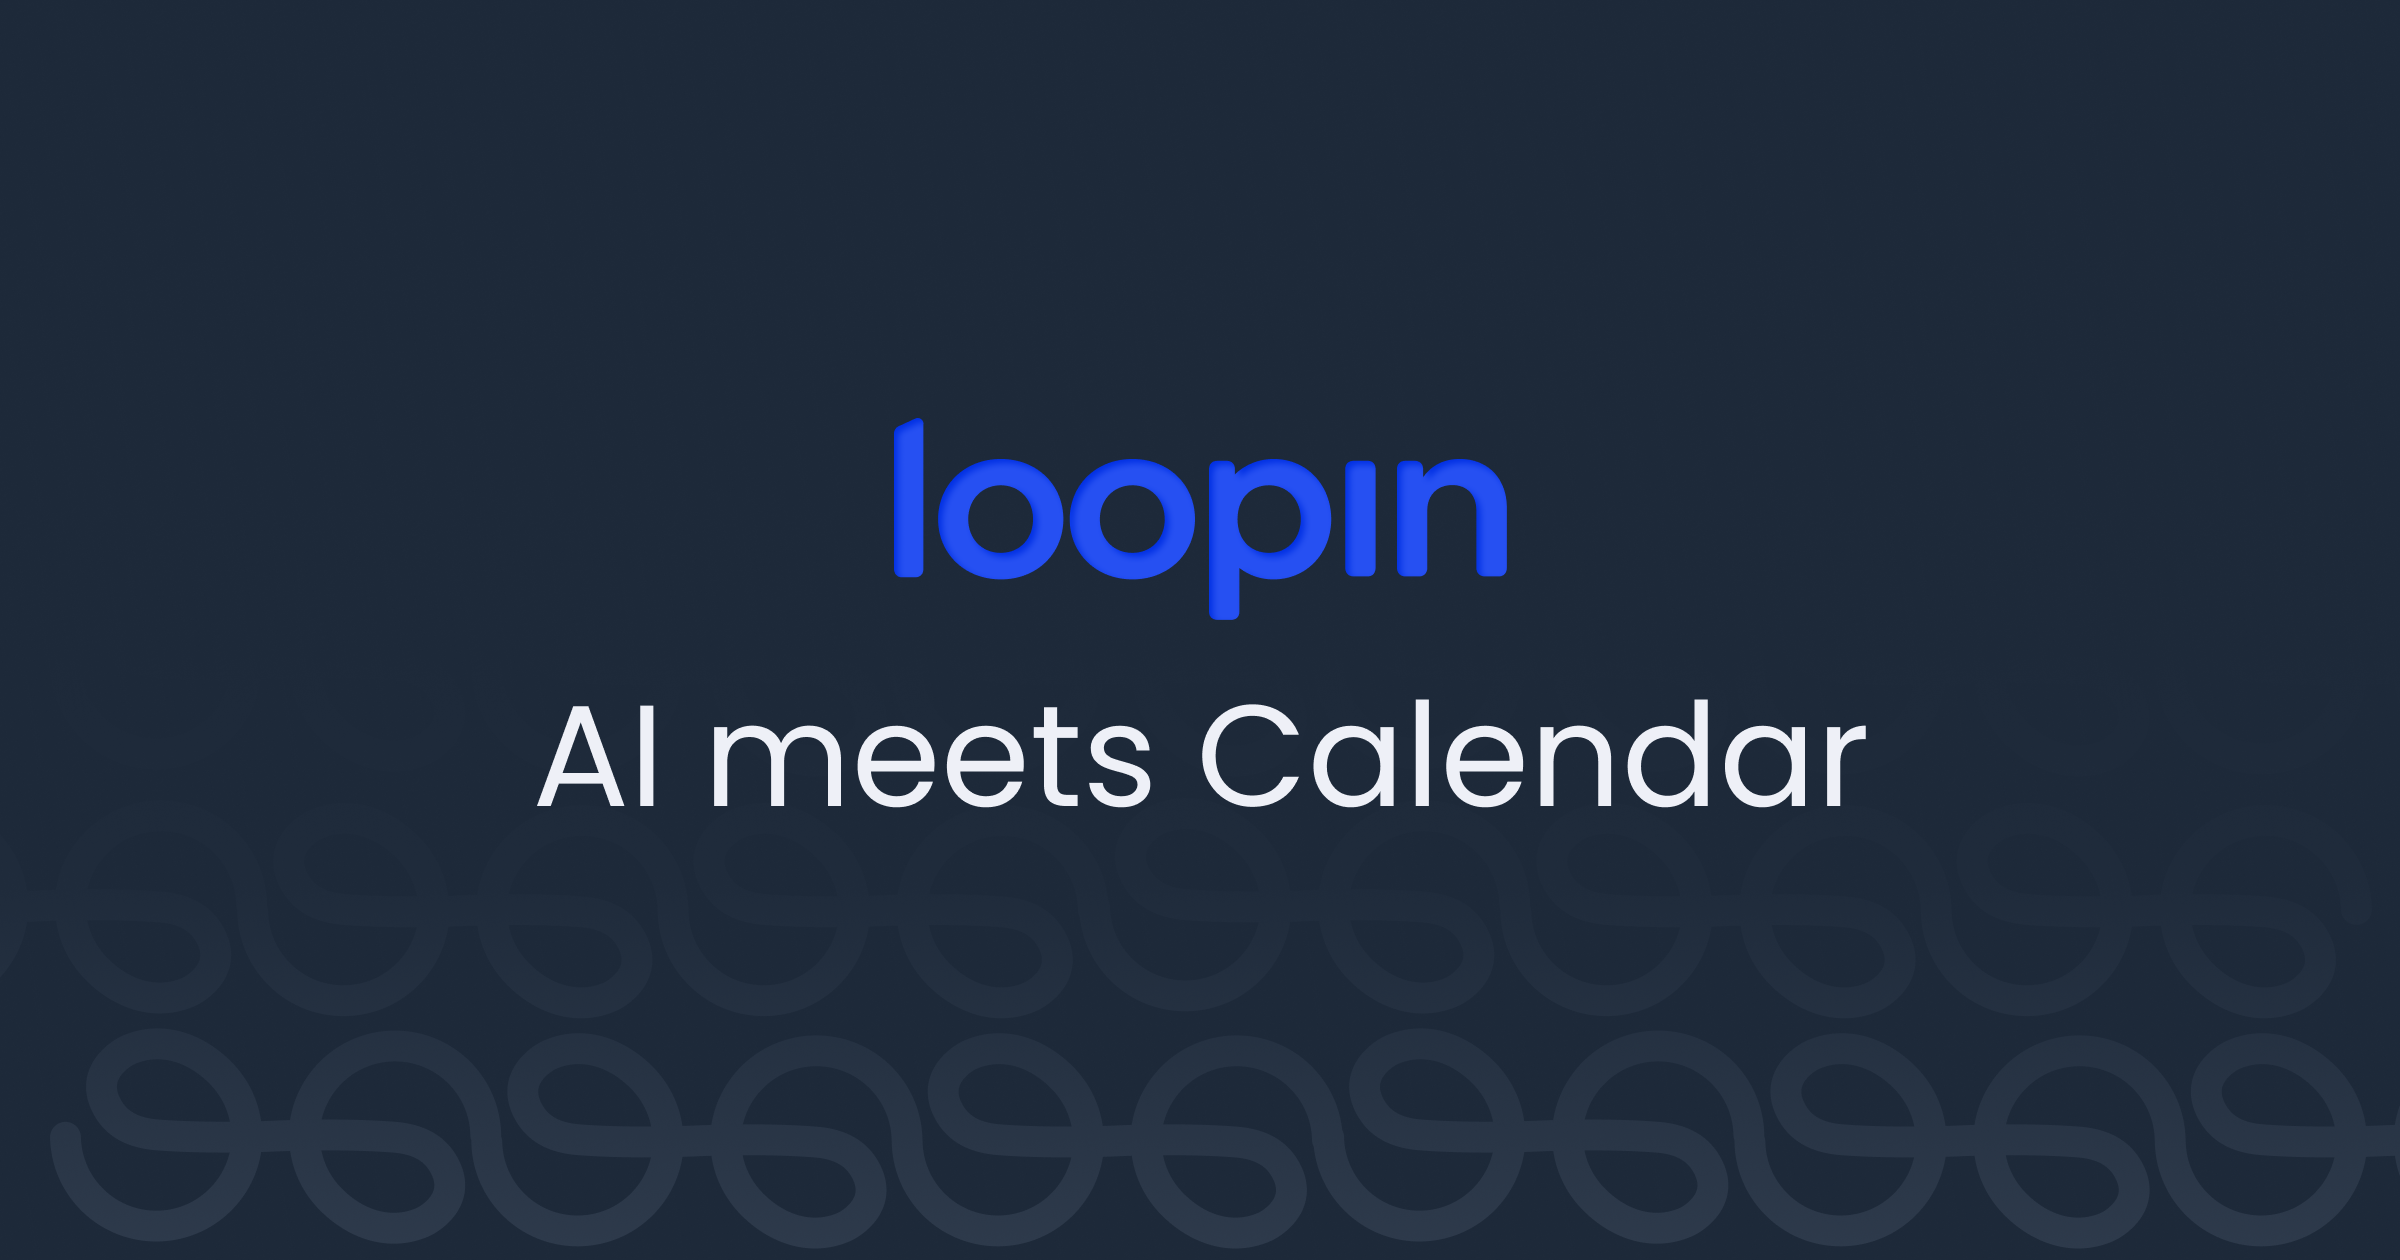 Loopin AI - Eine Plattform für Besprechungen, Veranstaltungsplanung und Kalendermanagement